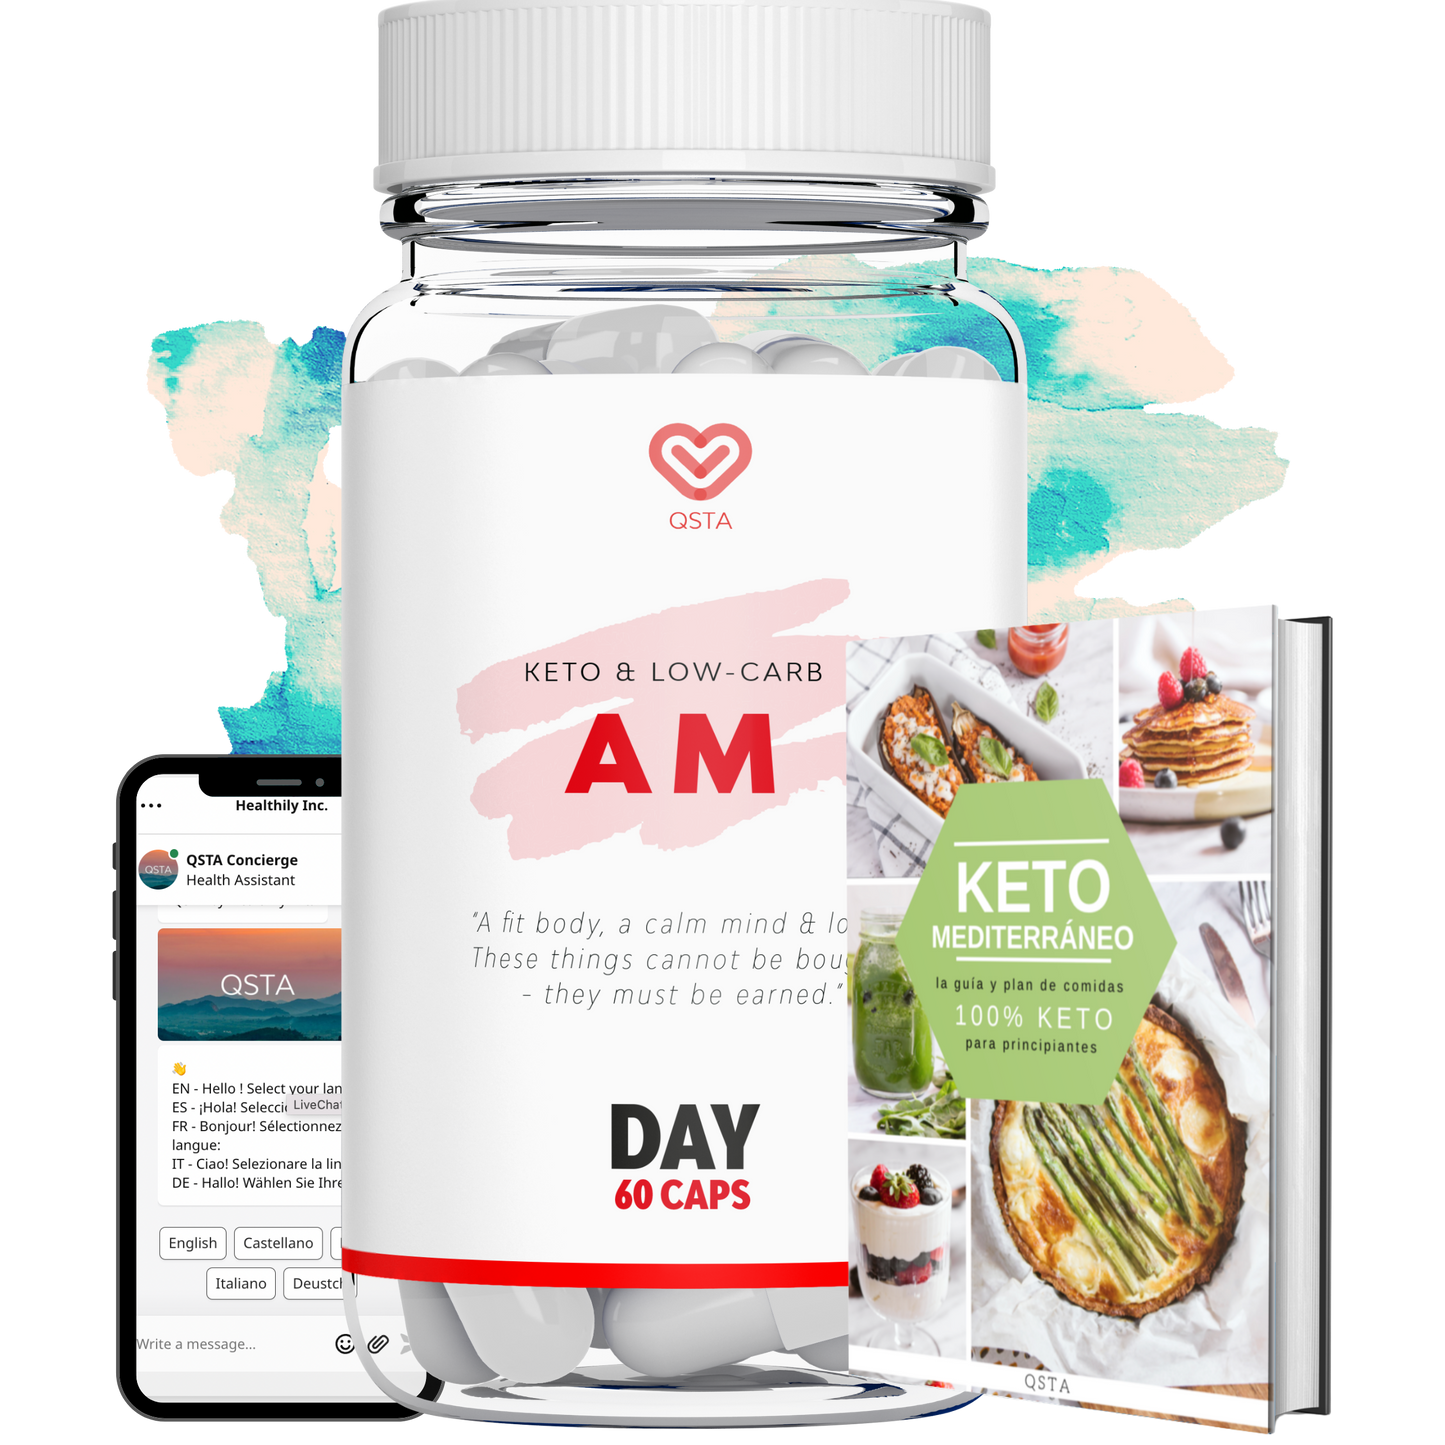 Keto AM | Cetosis y energía durante el día